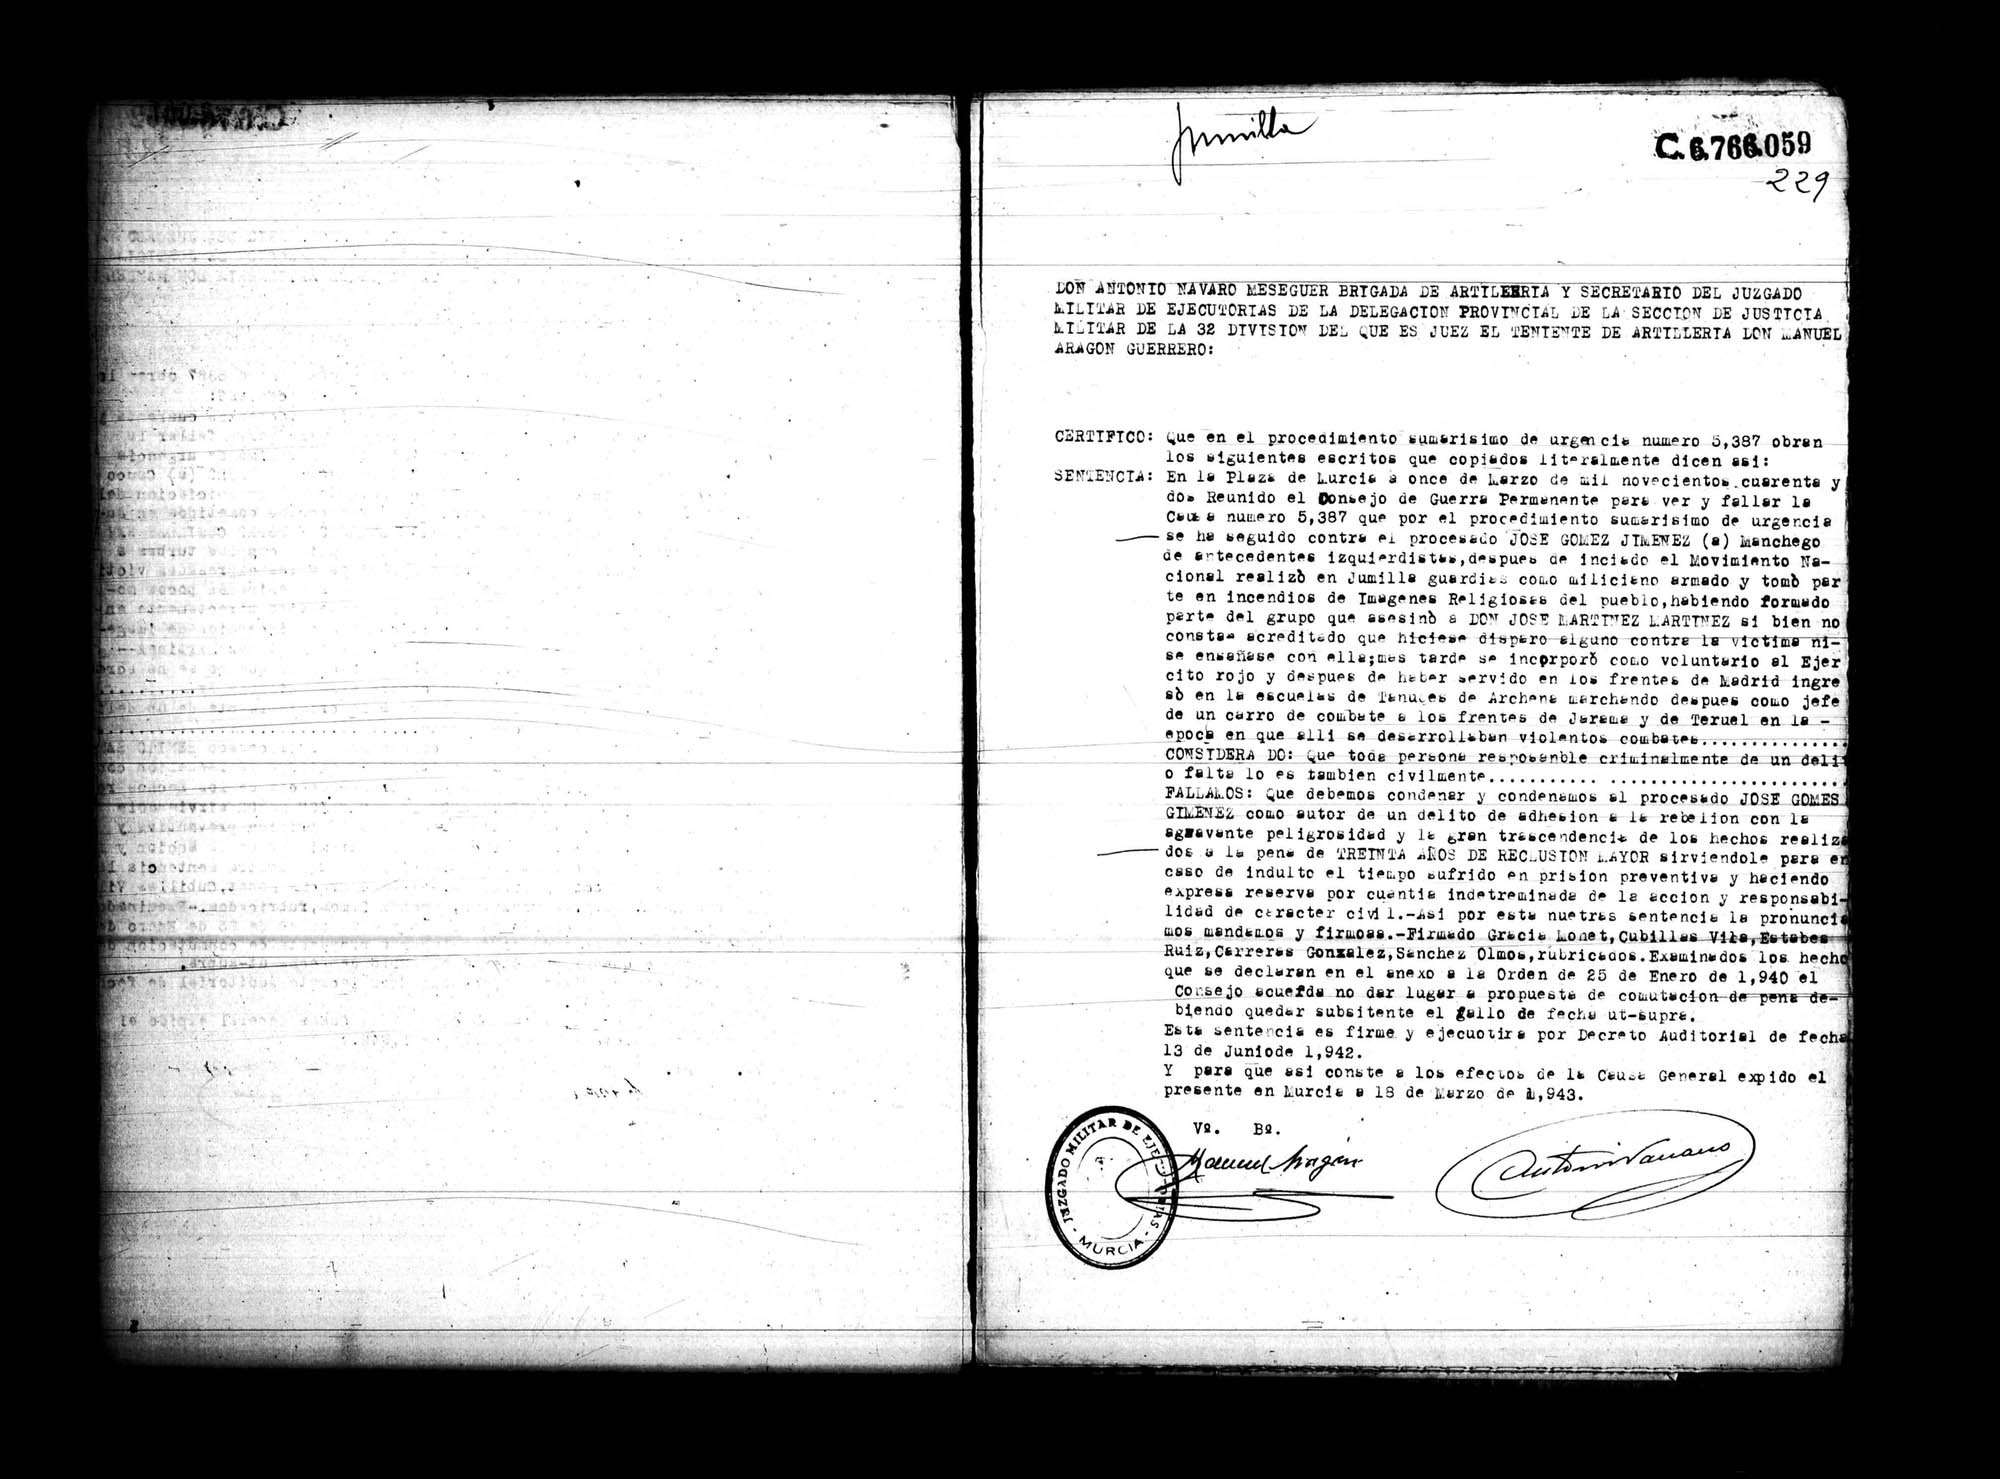 Certificado de la sentencia pronunciada contra José Gómez Giménez, causa 5387, el 11 de marzo de 1942 en Murcia.